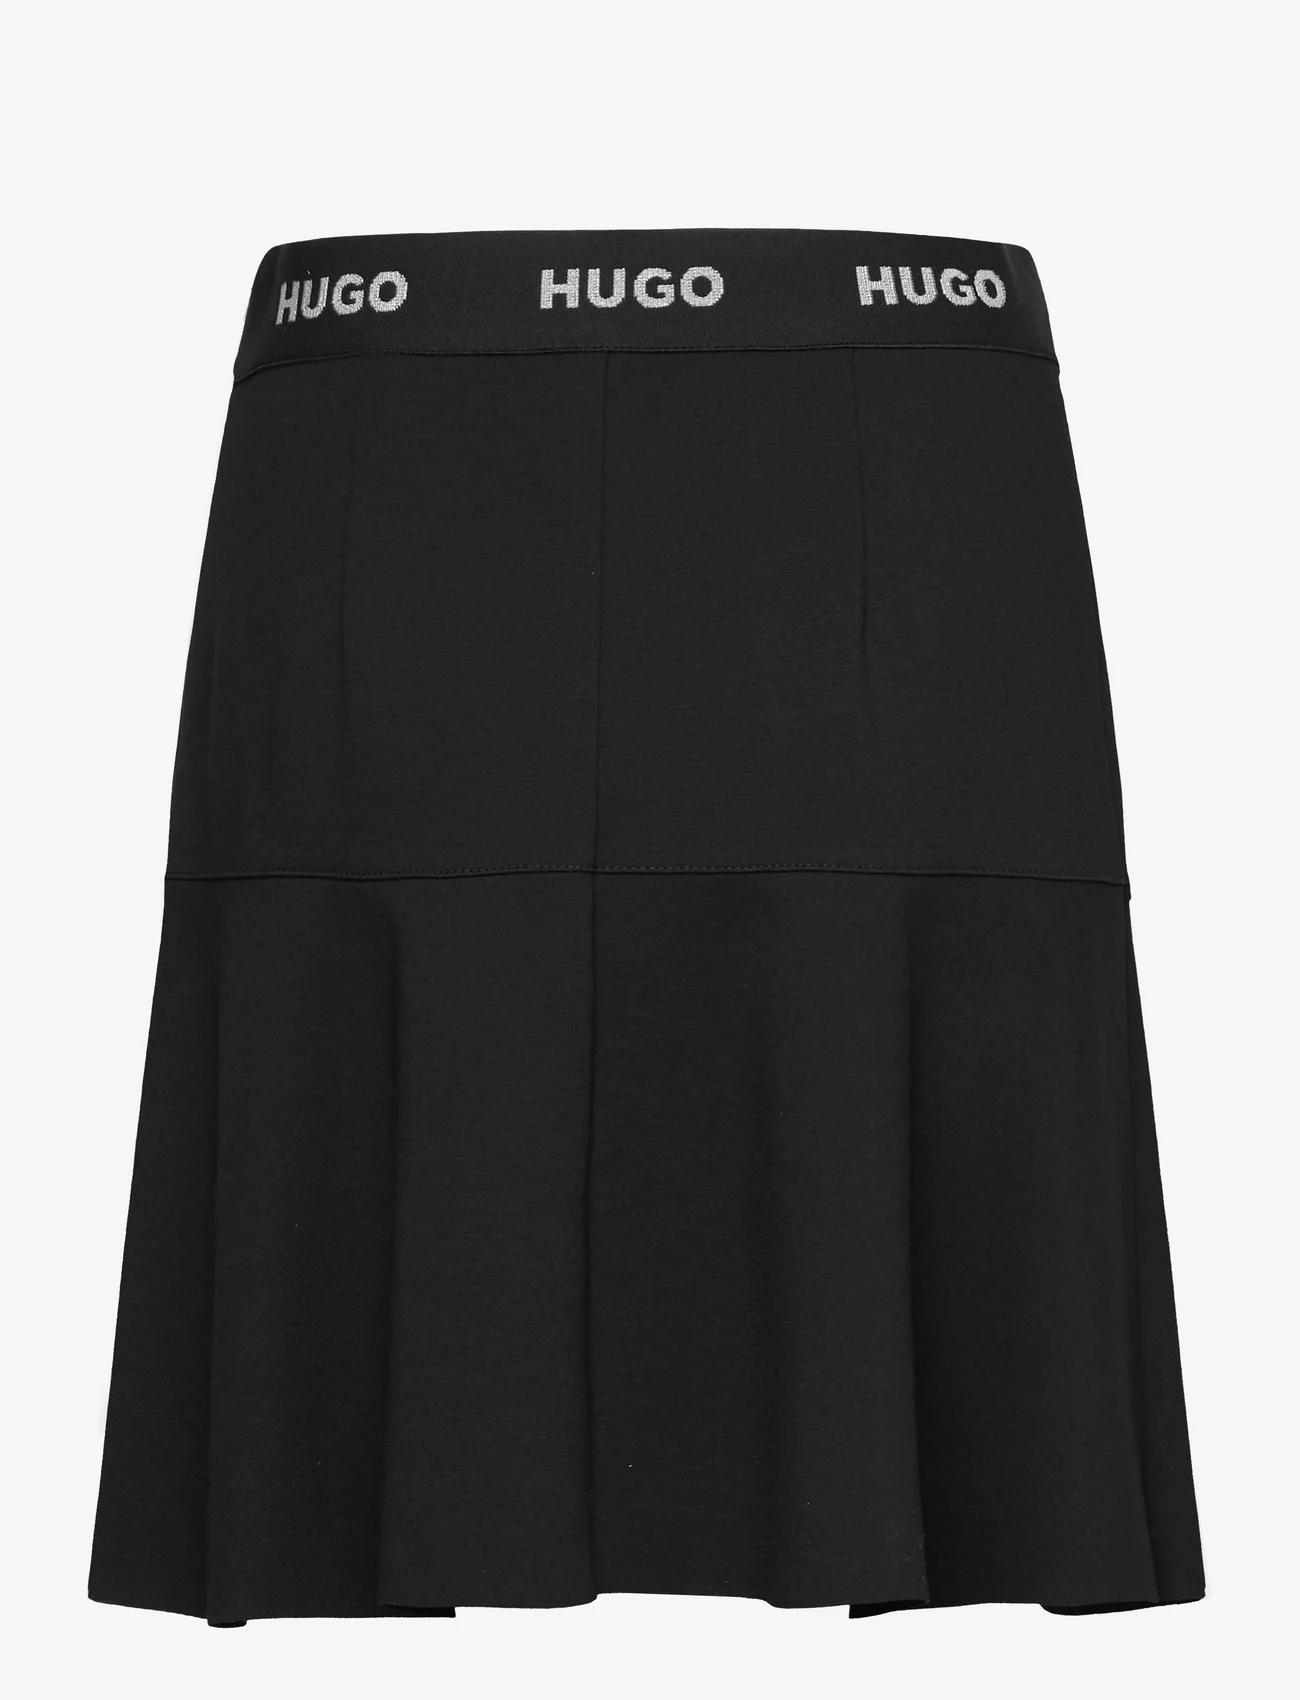 HUGO - Relosana - Īsi svārki - black - 1